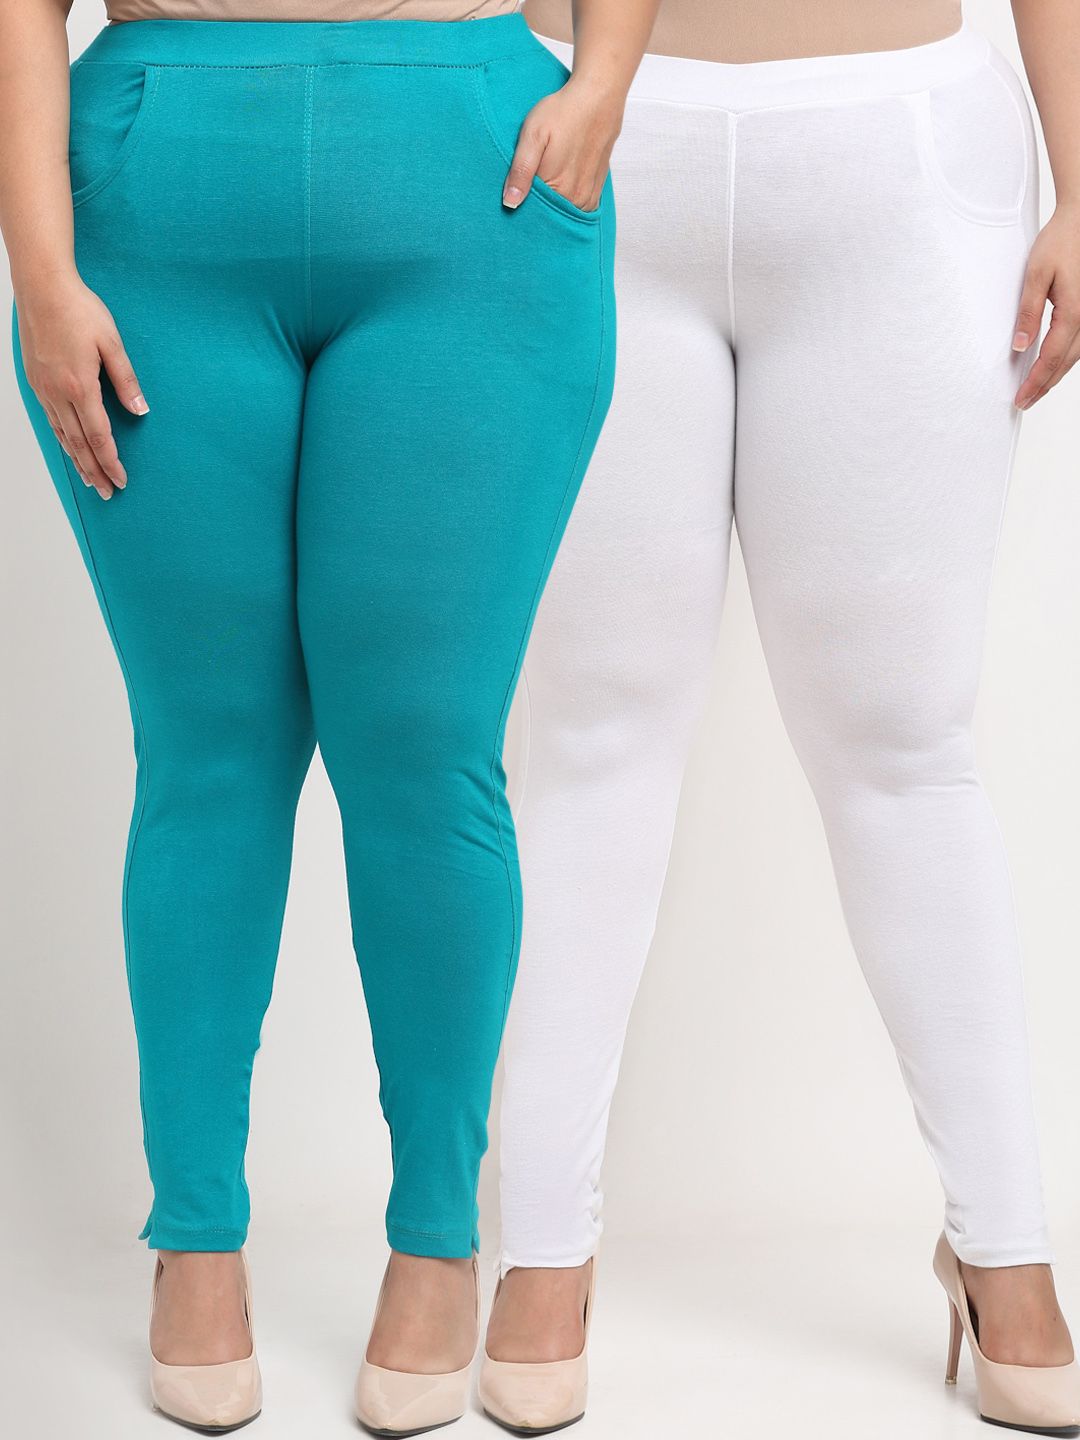 TAG 7 PLUS Women Blue & White Set of 2 Plus Size Leggings Price in India